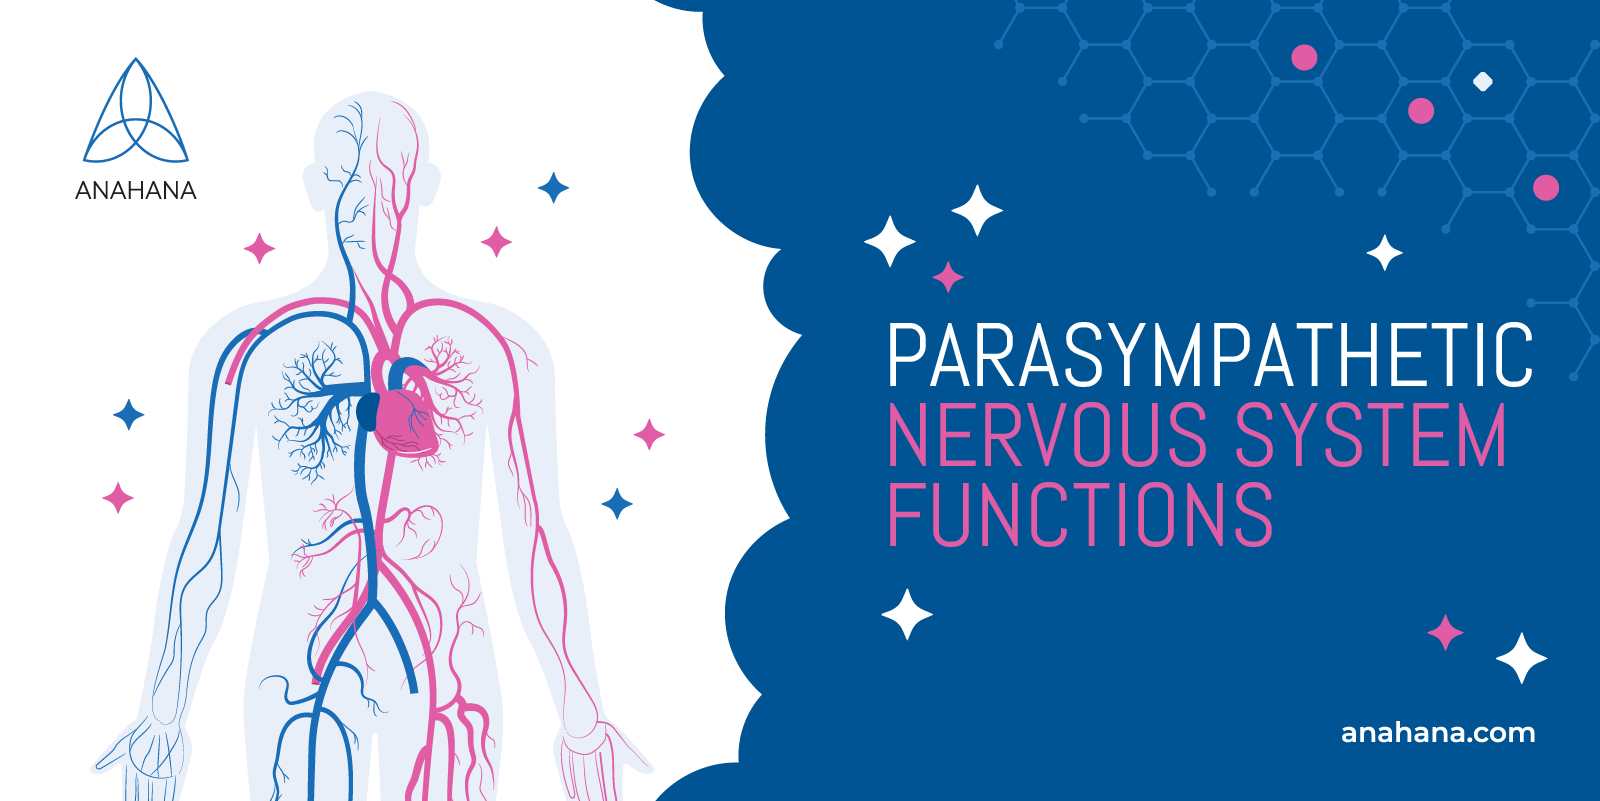 les fonctions du système nerveux parasympathique